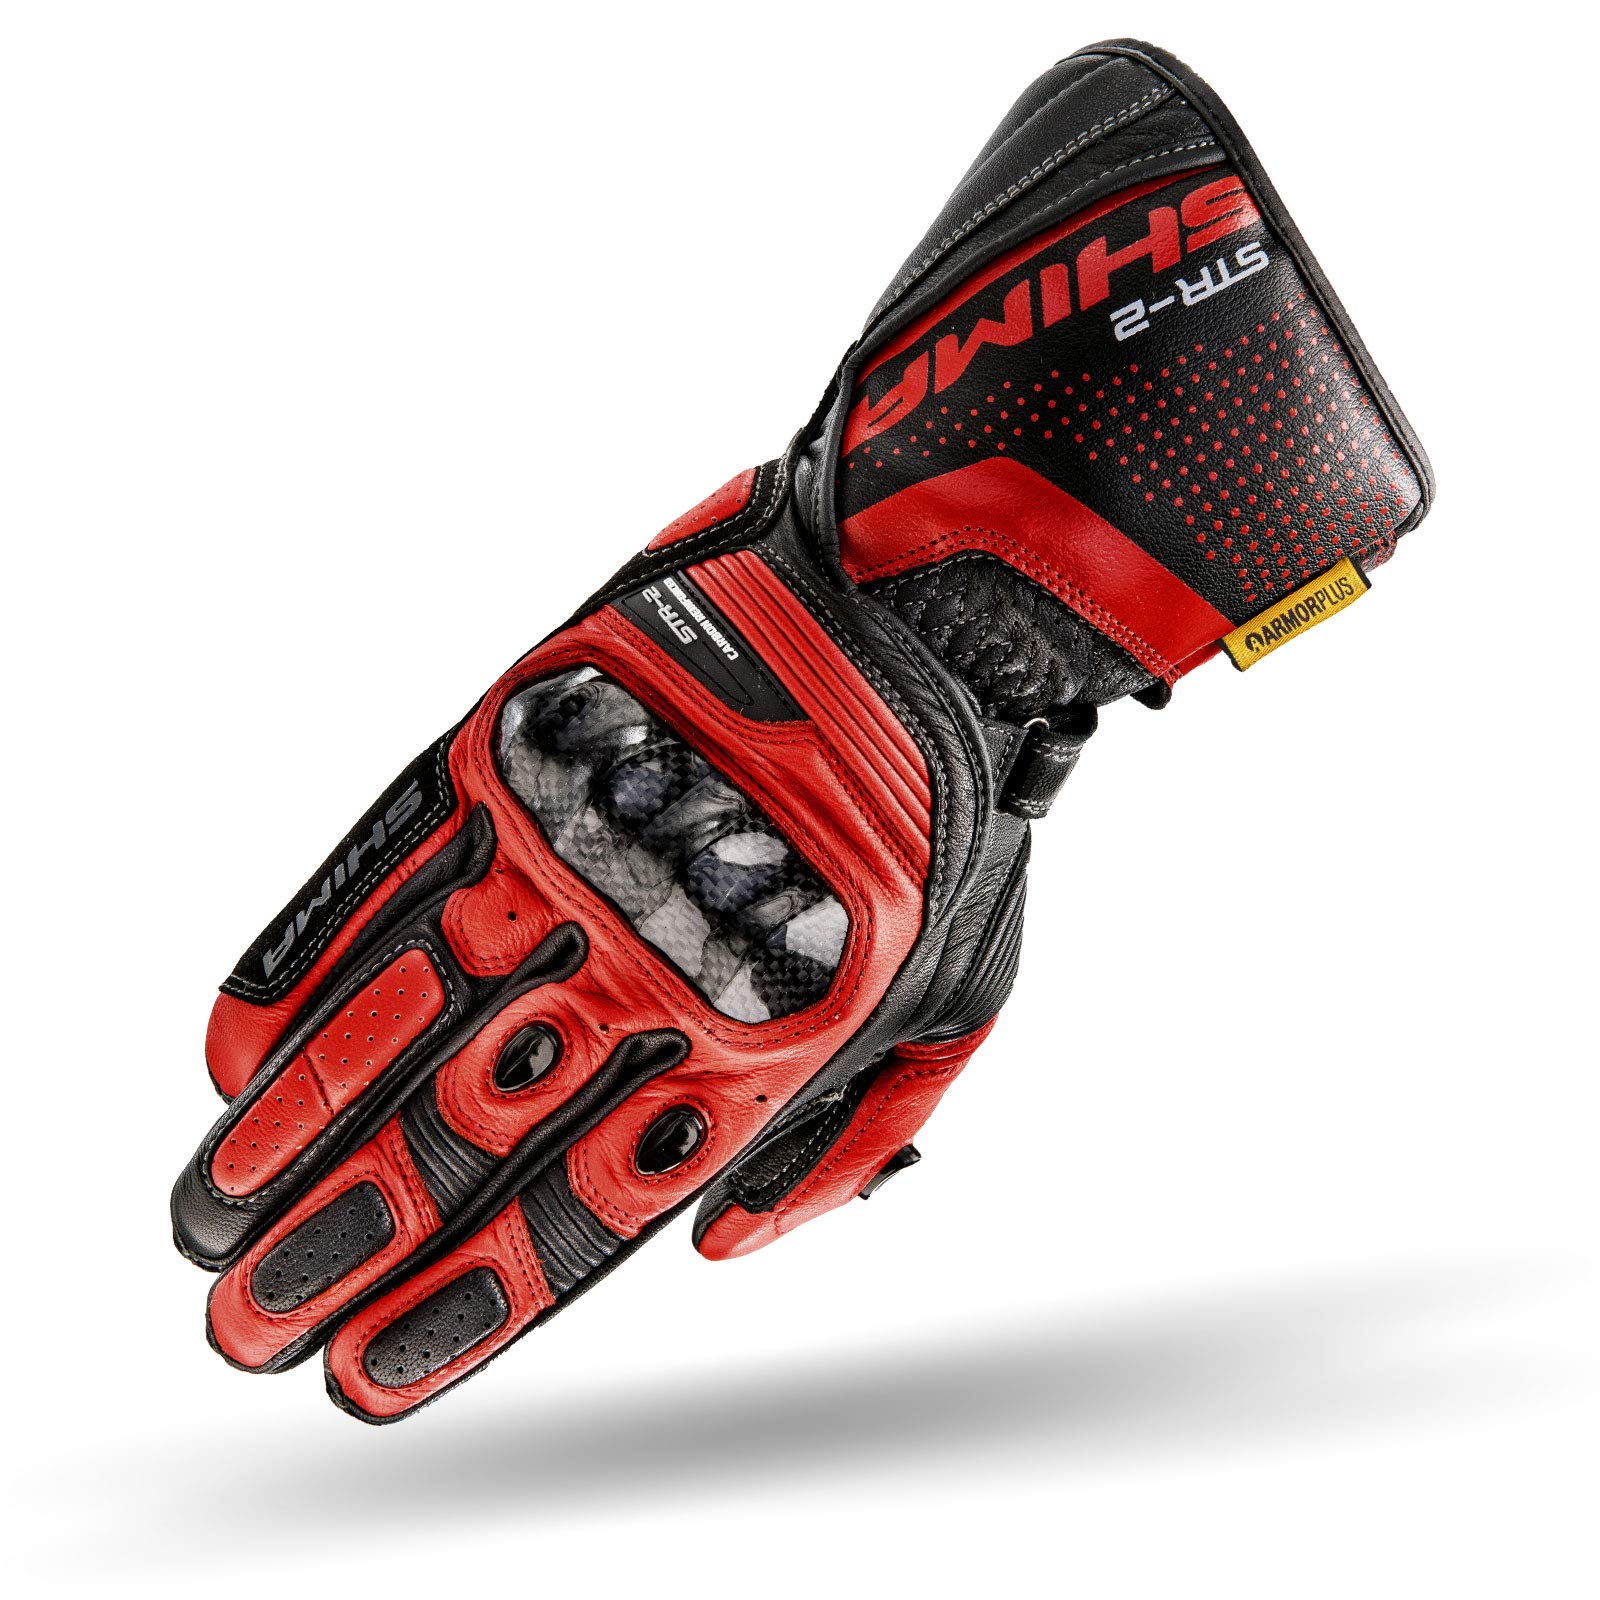 SHIMA STR-2 Motorradhandschuhe Herren - Touchscreen, Sommer, Sport Leder Handschuhe mit Carbon Knöchelprotektor, Handflächen- und Fingerschieber, Verstärkte Handfläche (Schwarz/Rot, S)